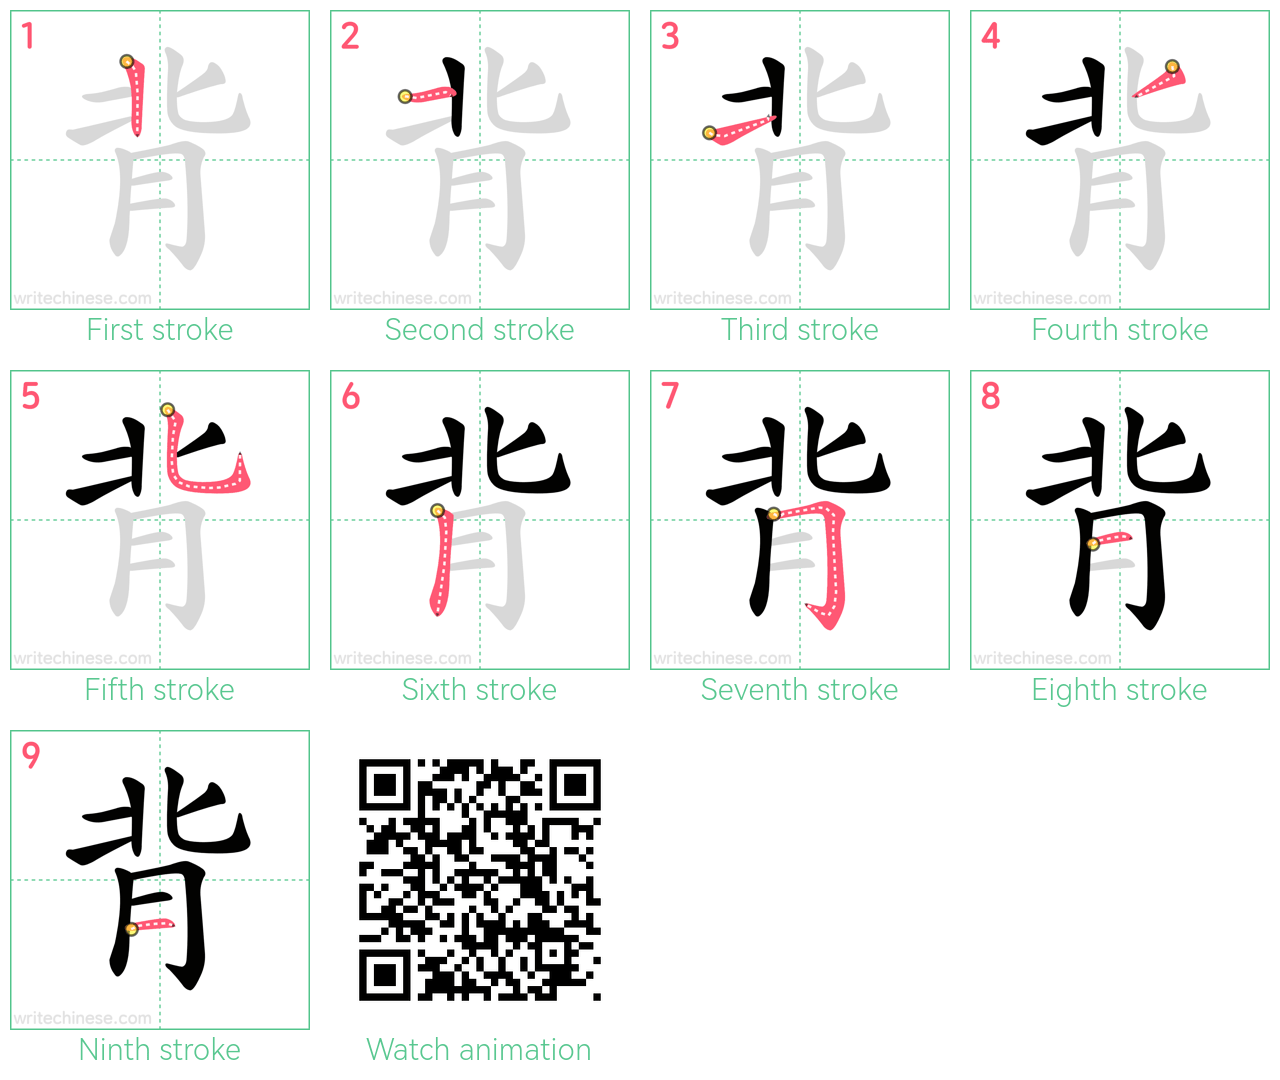 背 step-by-step stroke order diagrams